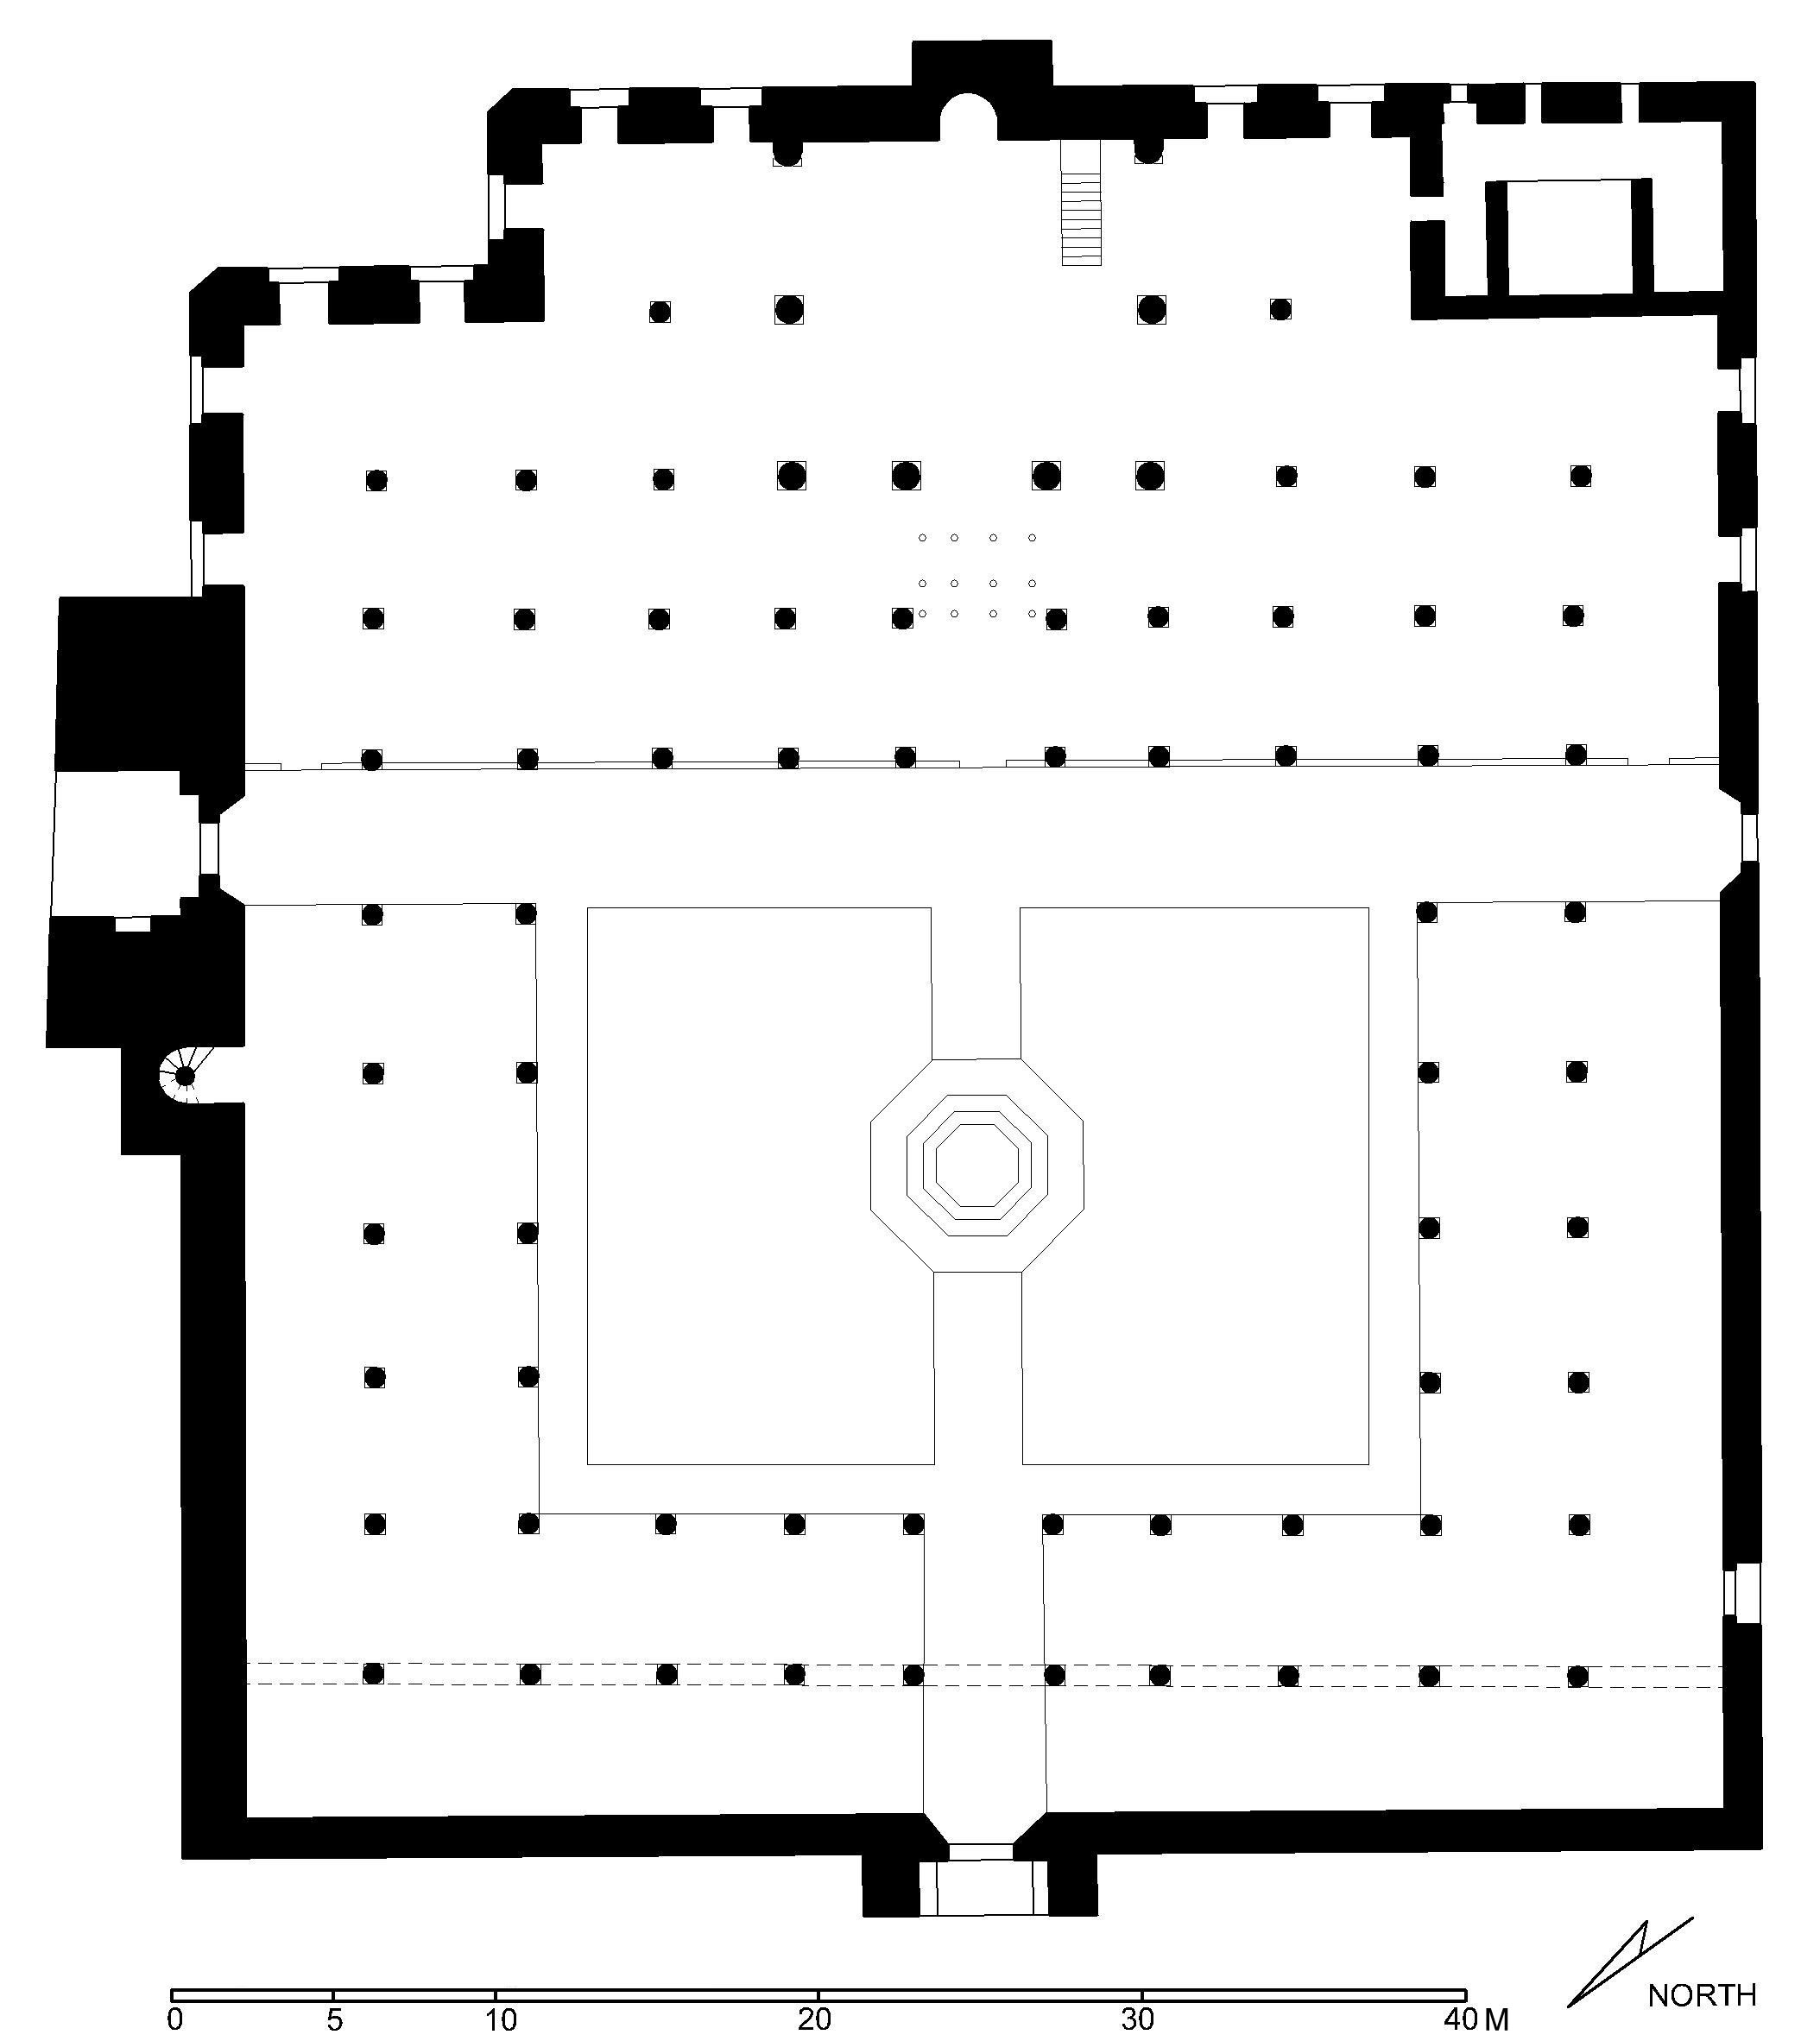 Floor plan of mosque (after Meinecke)